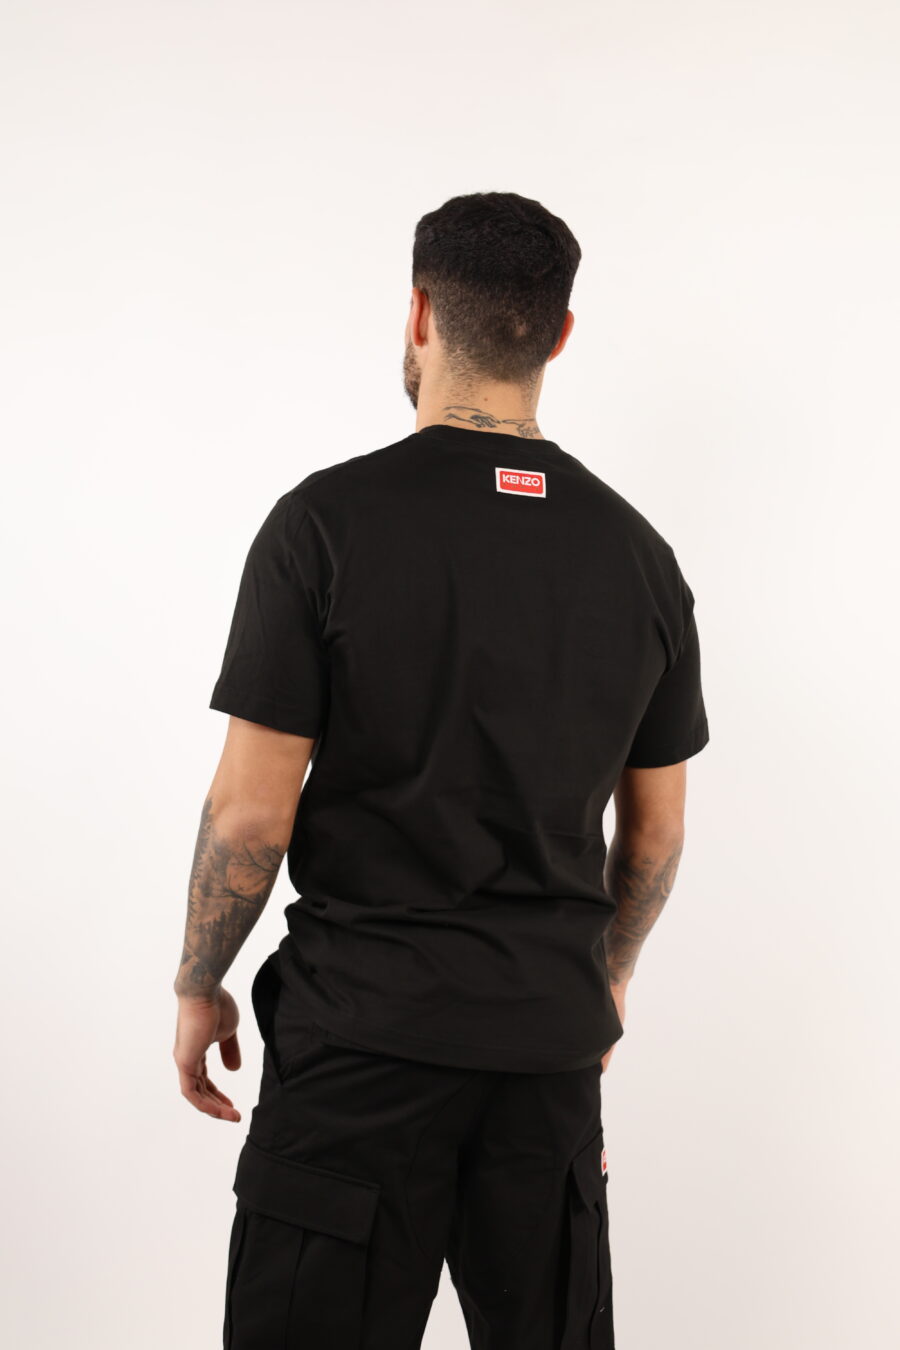 Camiseta negra con minilogo "kenzo elephant" - 109022